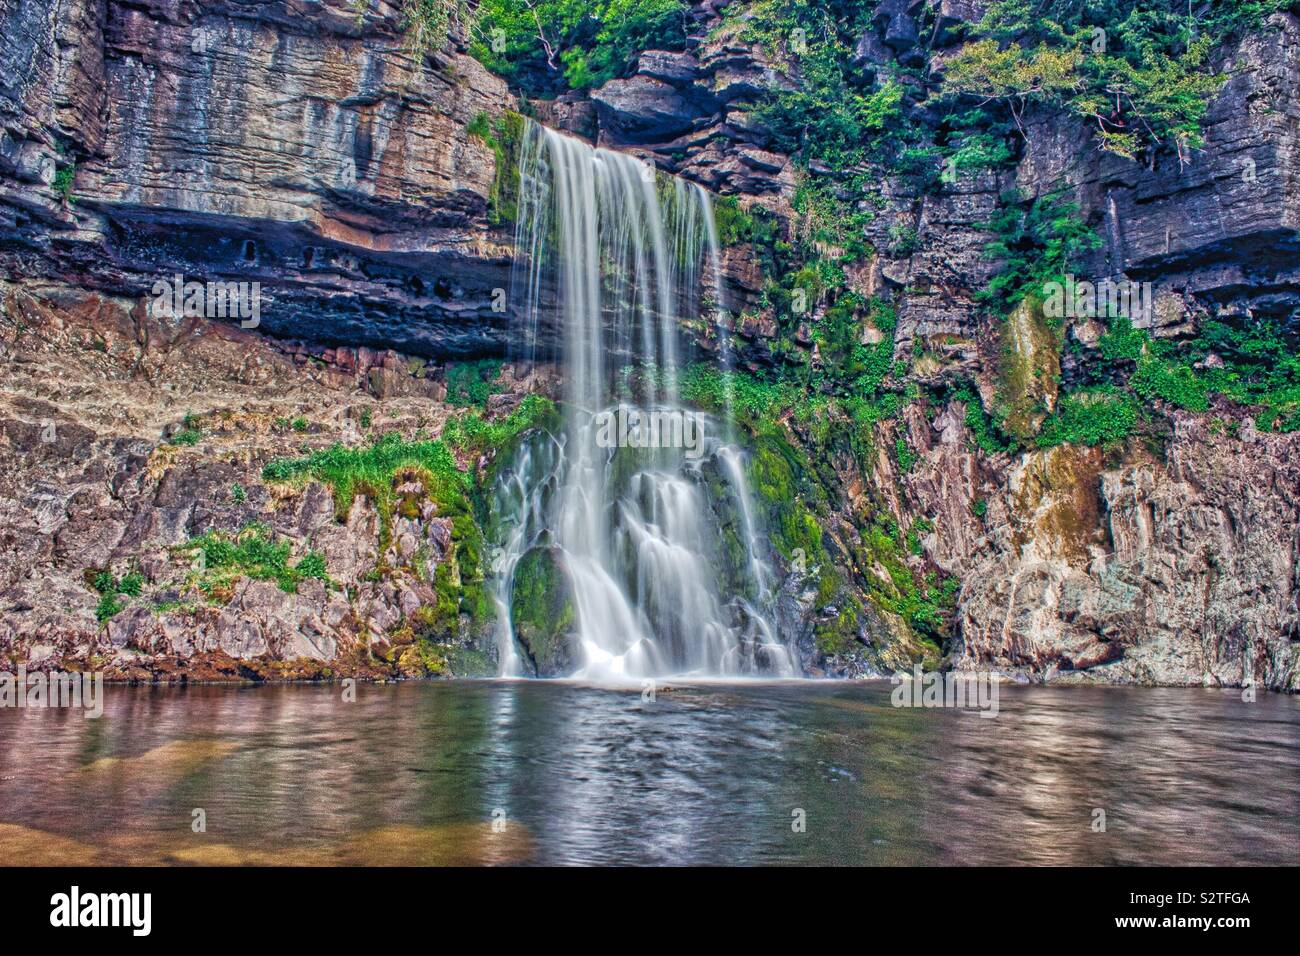 Waterfall at ingleton falls Stock Photo